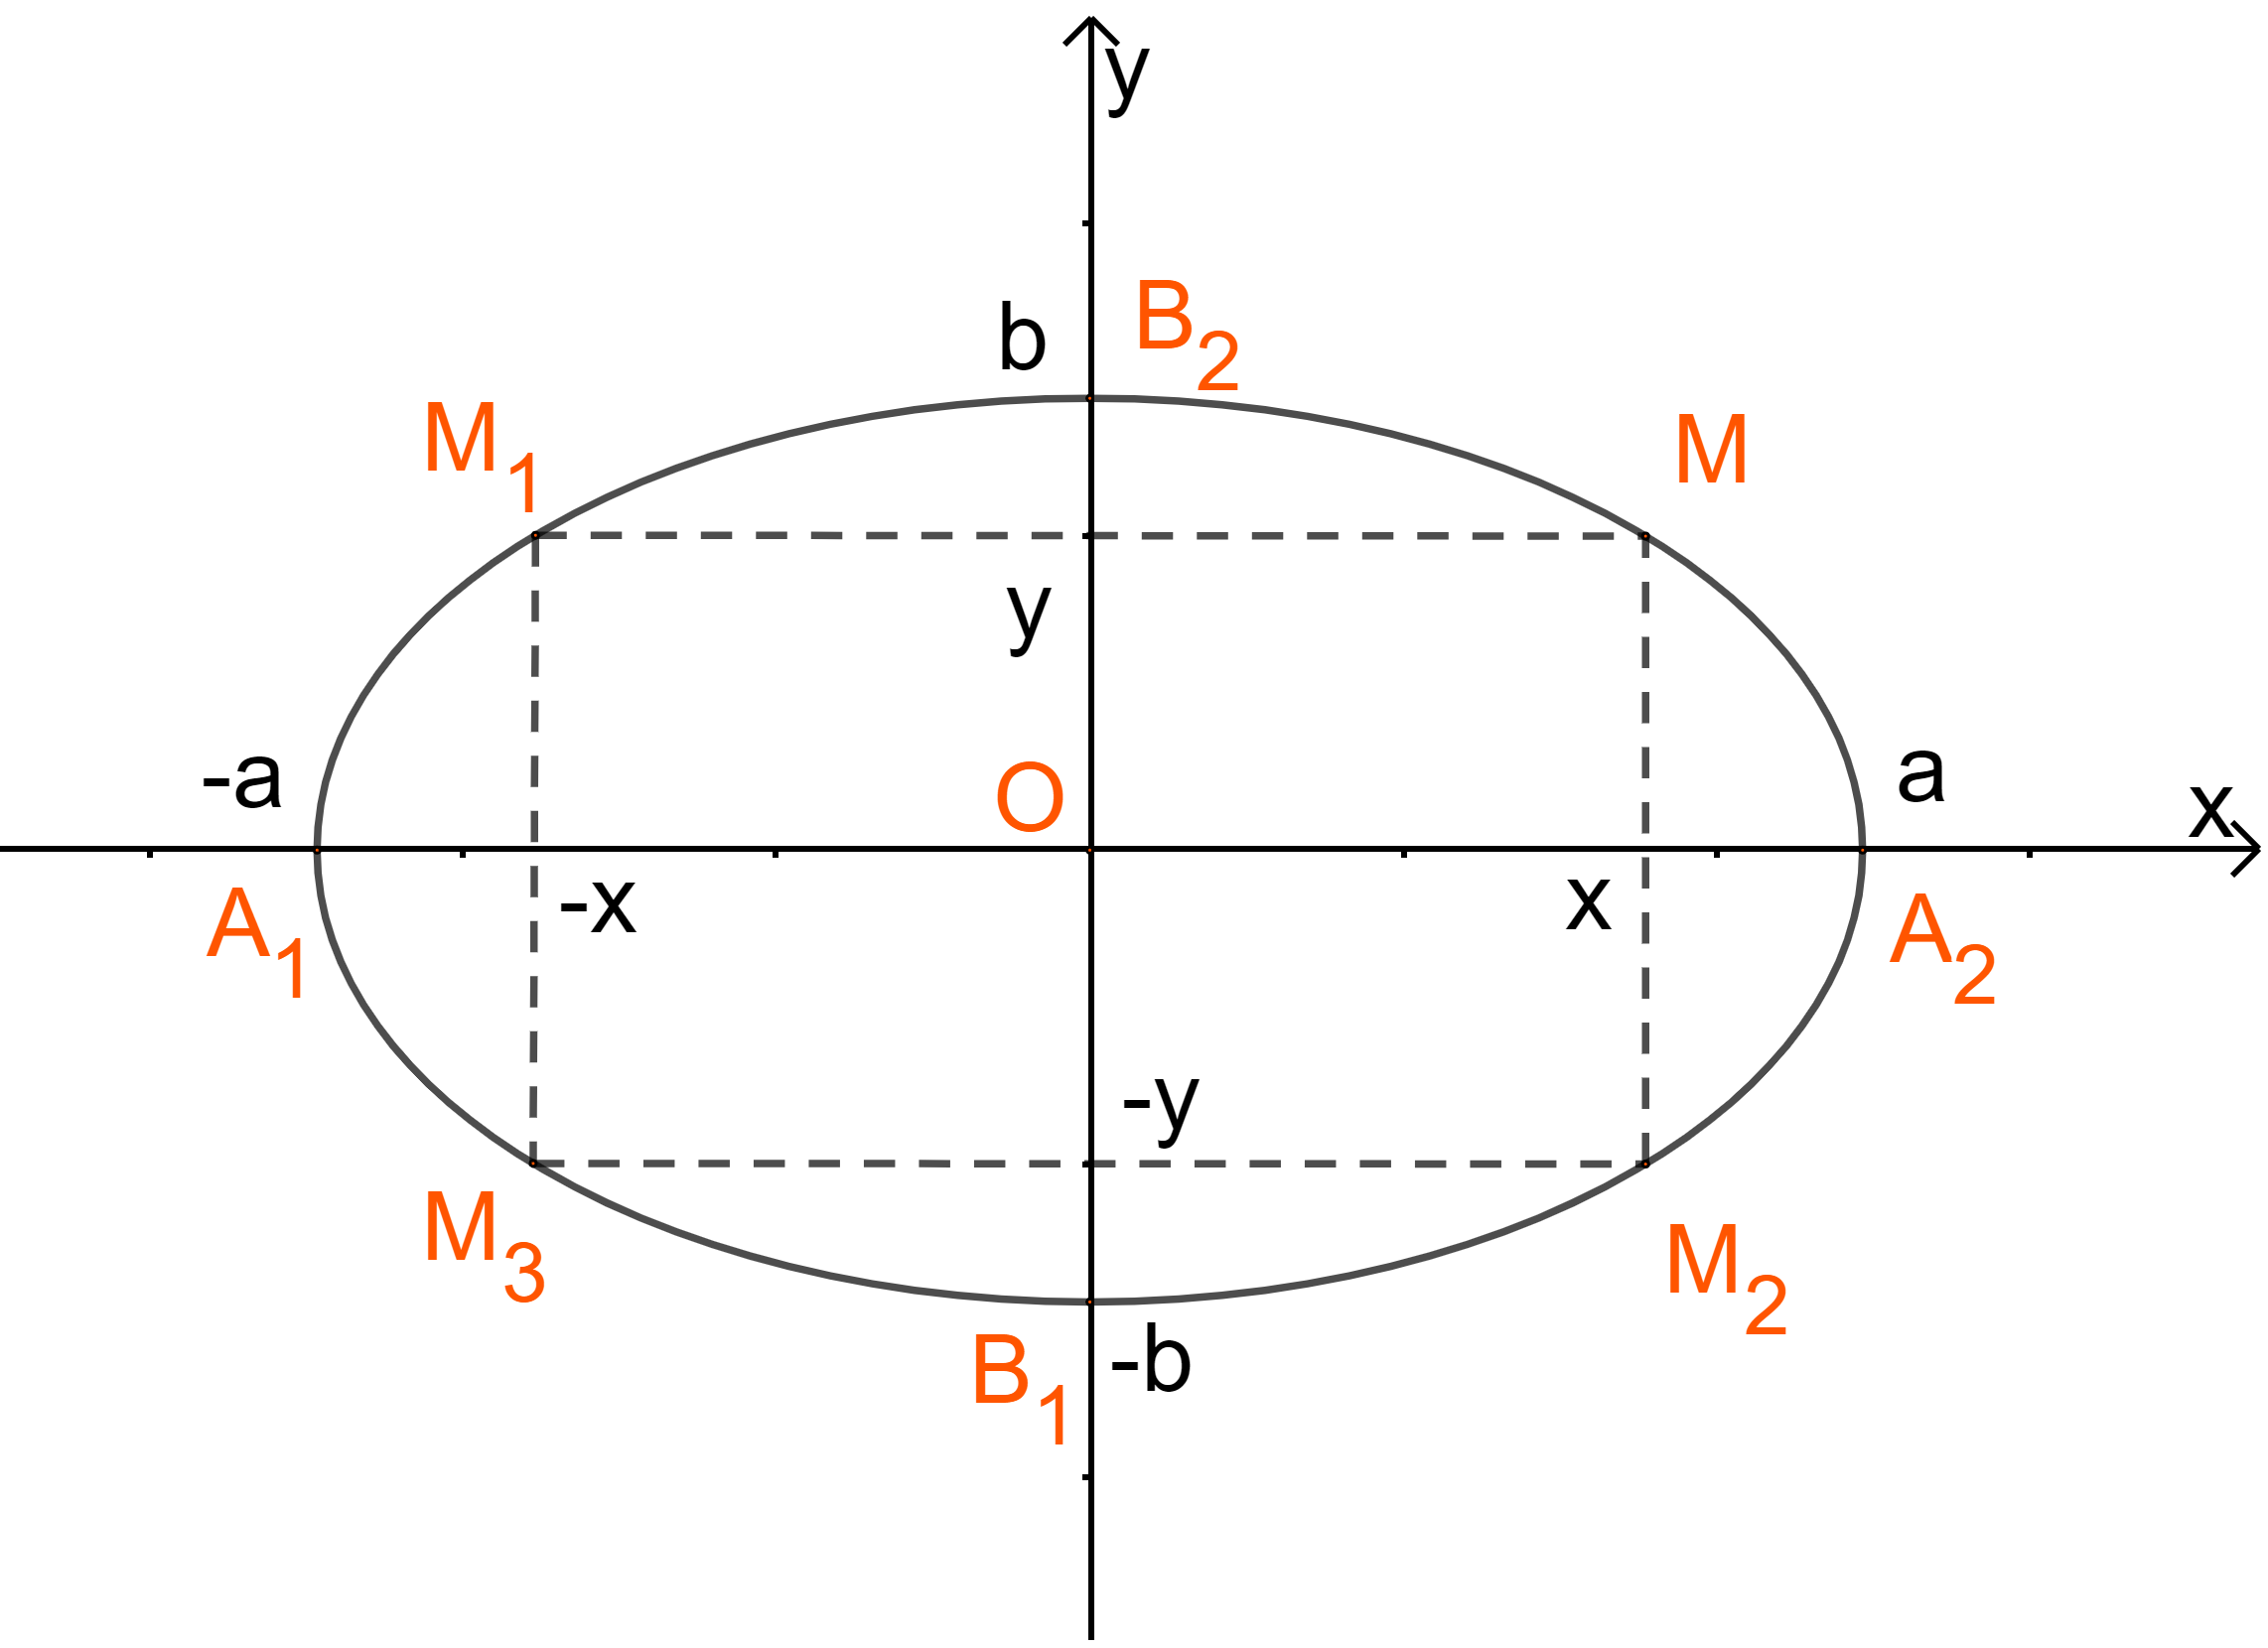 Phương trình đường Elip: Phương trình đường Elip không chỉ là một phần của toán học, mà còn là một hình ảnh đẹp mắt và đầy sức hút! Hãy cùng khám phá sự hoàn hảo và độc đáo của các đường Elip trên hình ảnh này.